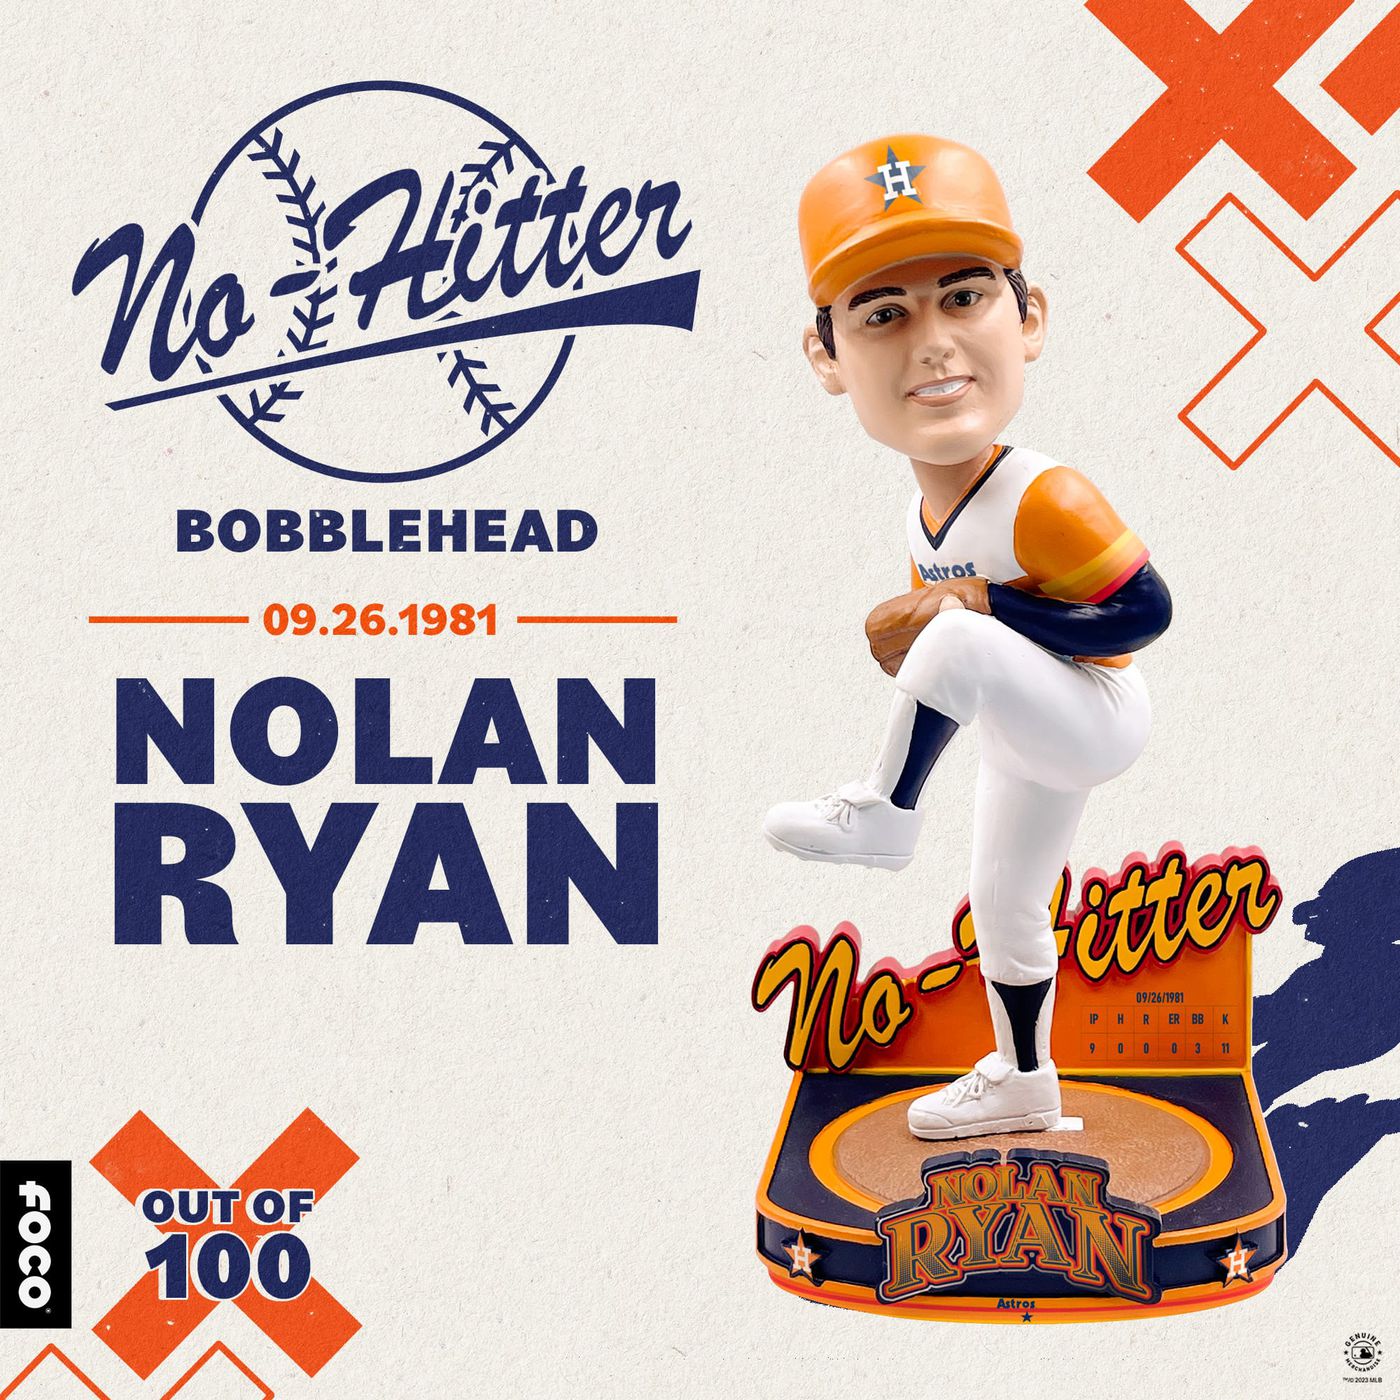 Nolan Ryan  Astros baseball, Nolan ryan, Houston astros